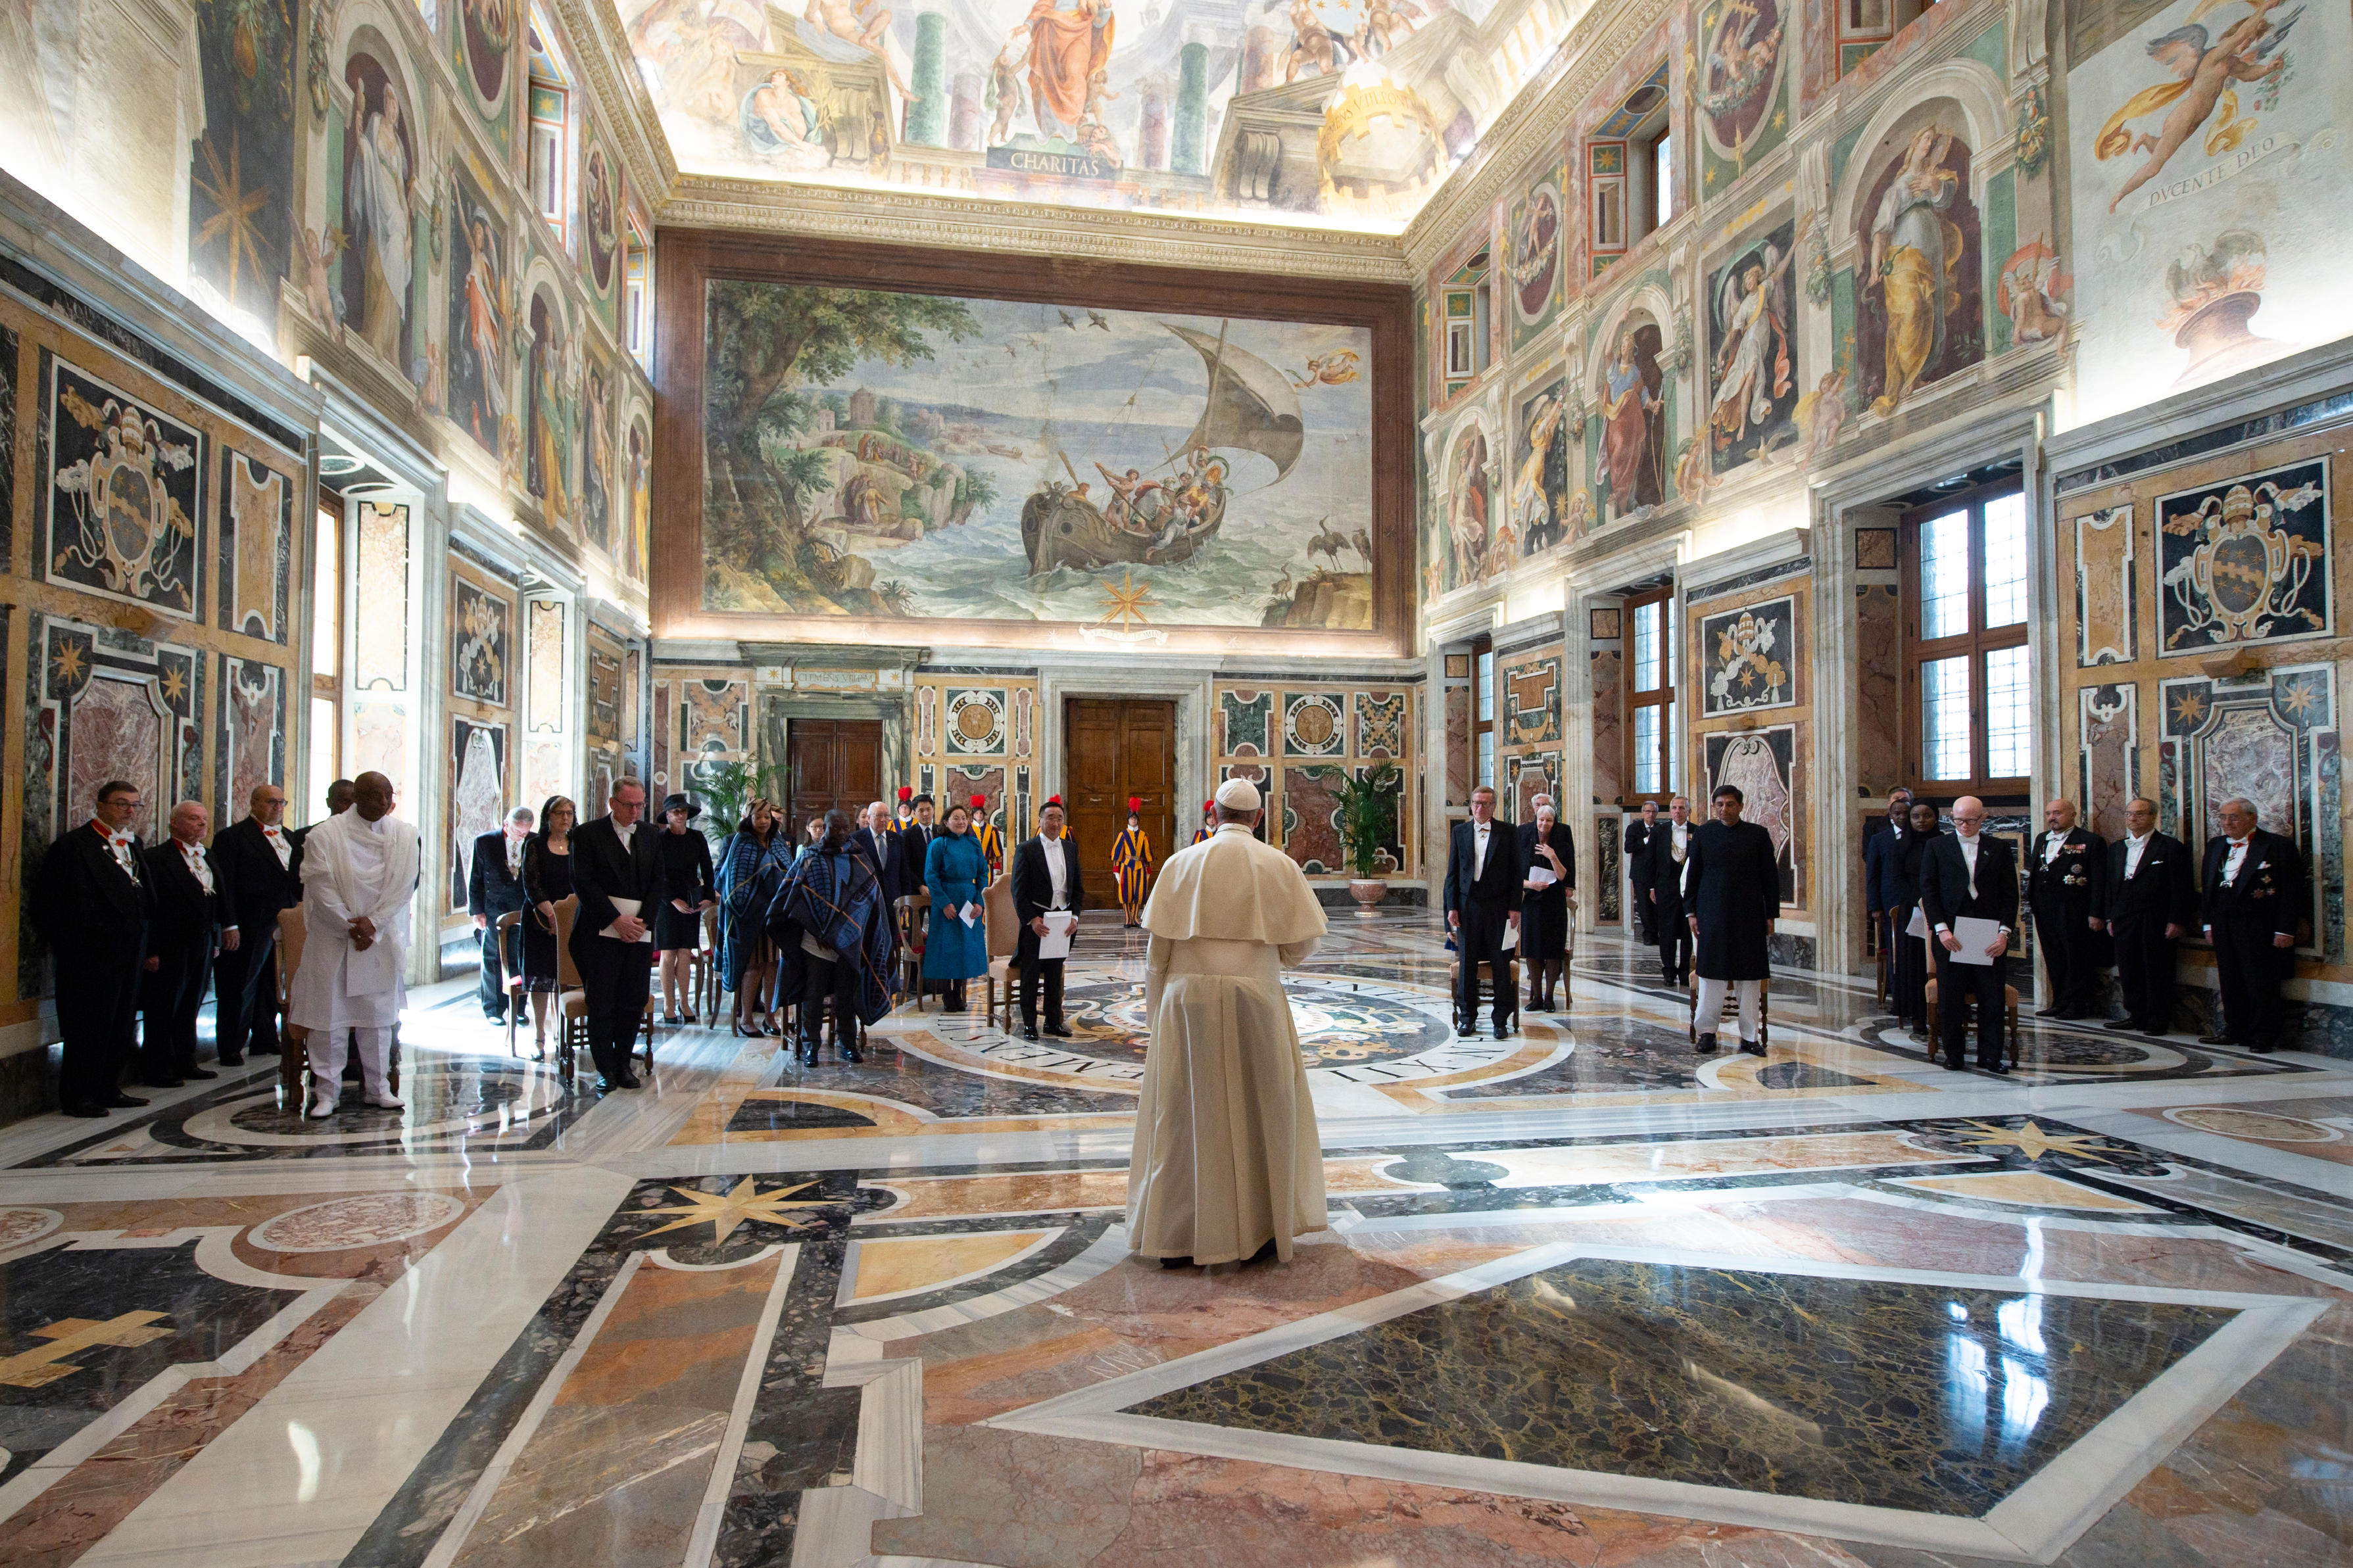 “La finalité de toute l’activité diplomatique doit être le développement” dit le pape François